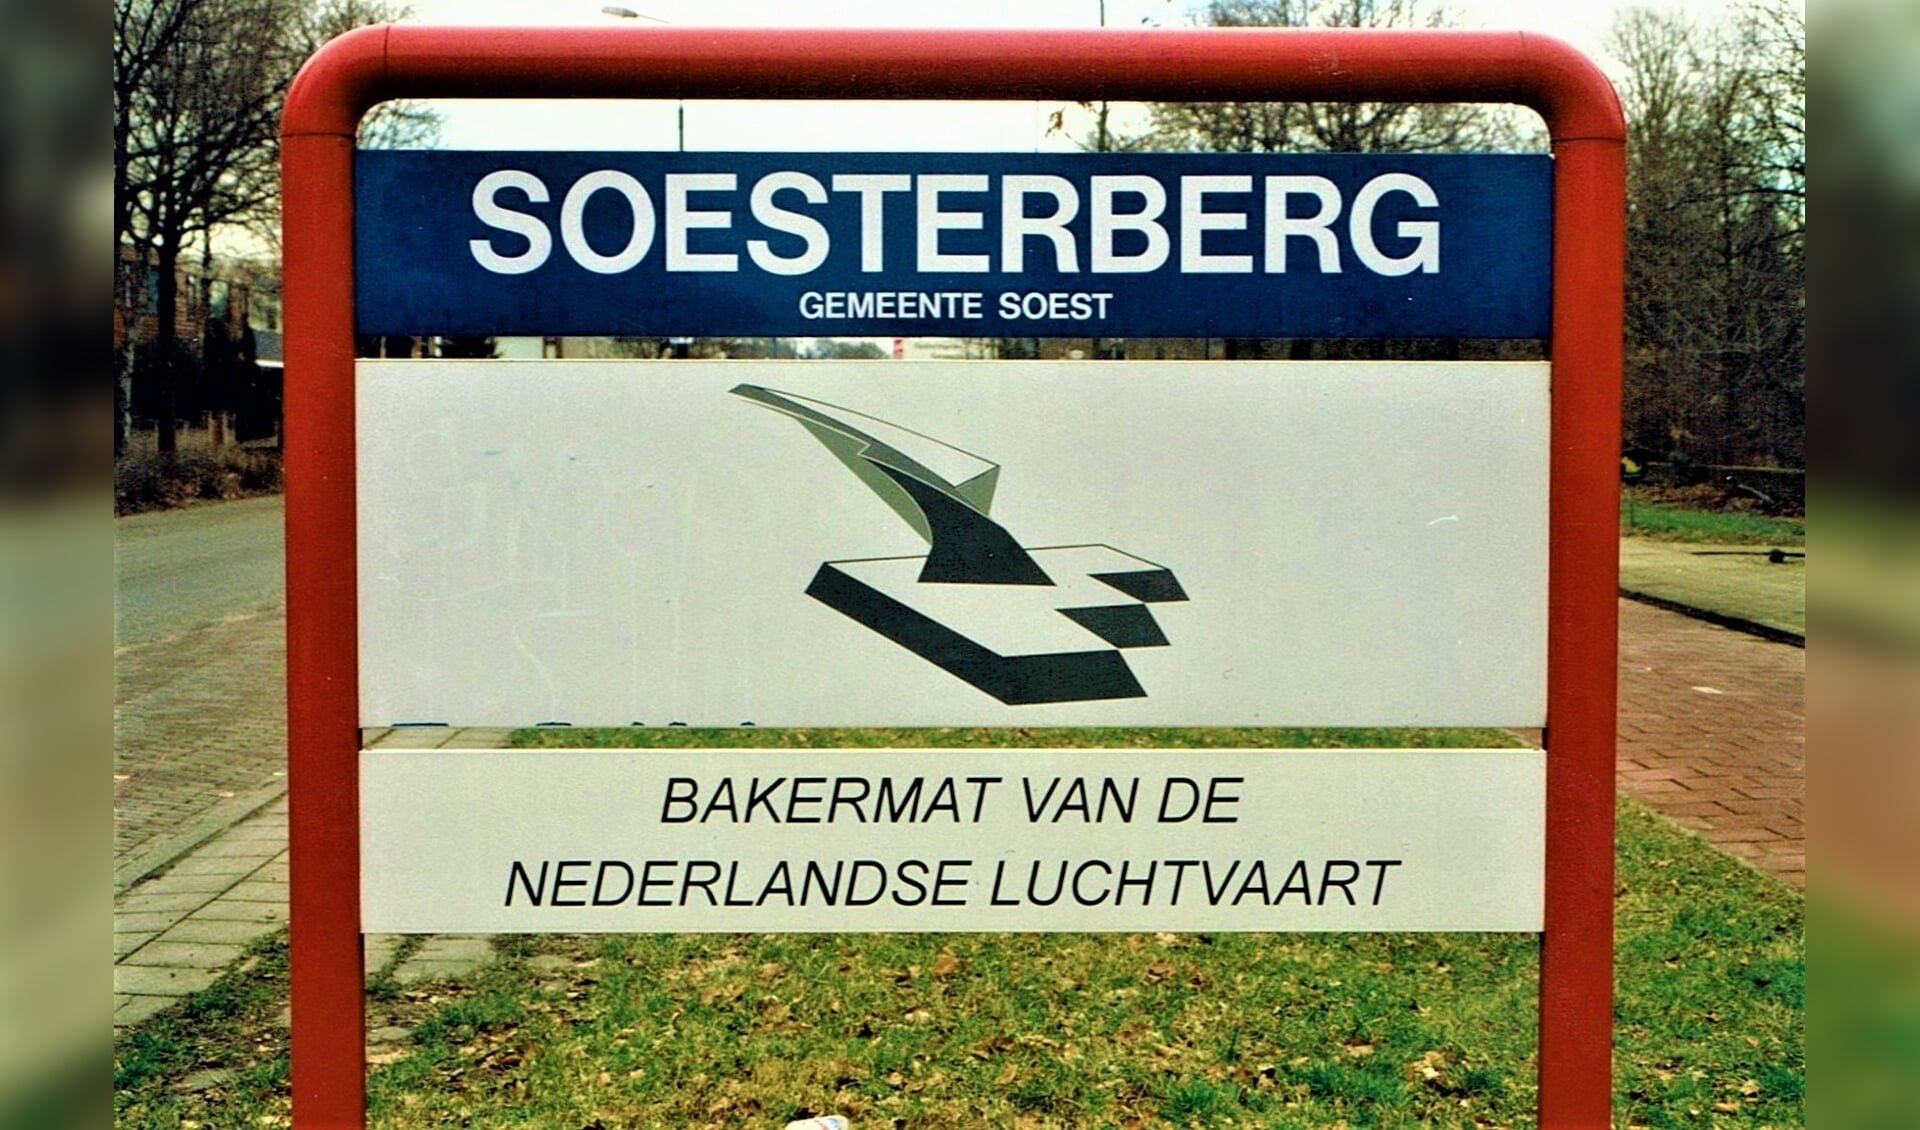 De onderborden zijn verdwenen. Soesterberg heeft steeds minder affectie met de gemeente Soest, zo lijkt het.